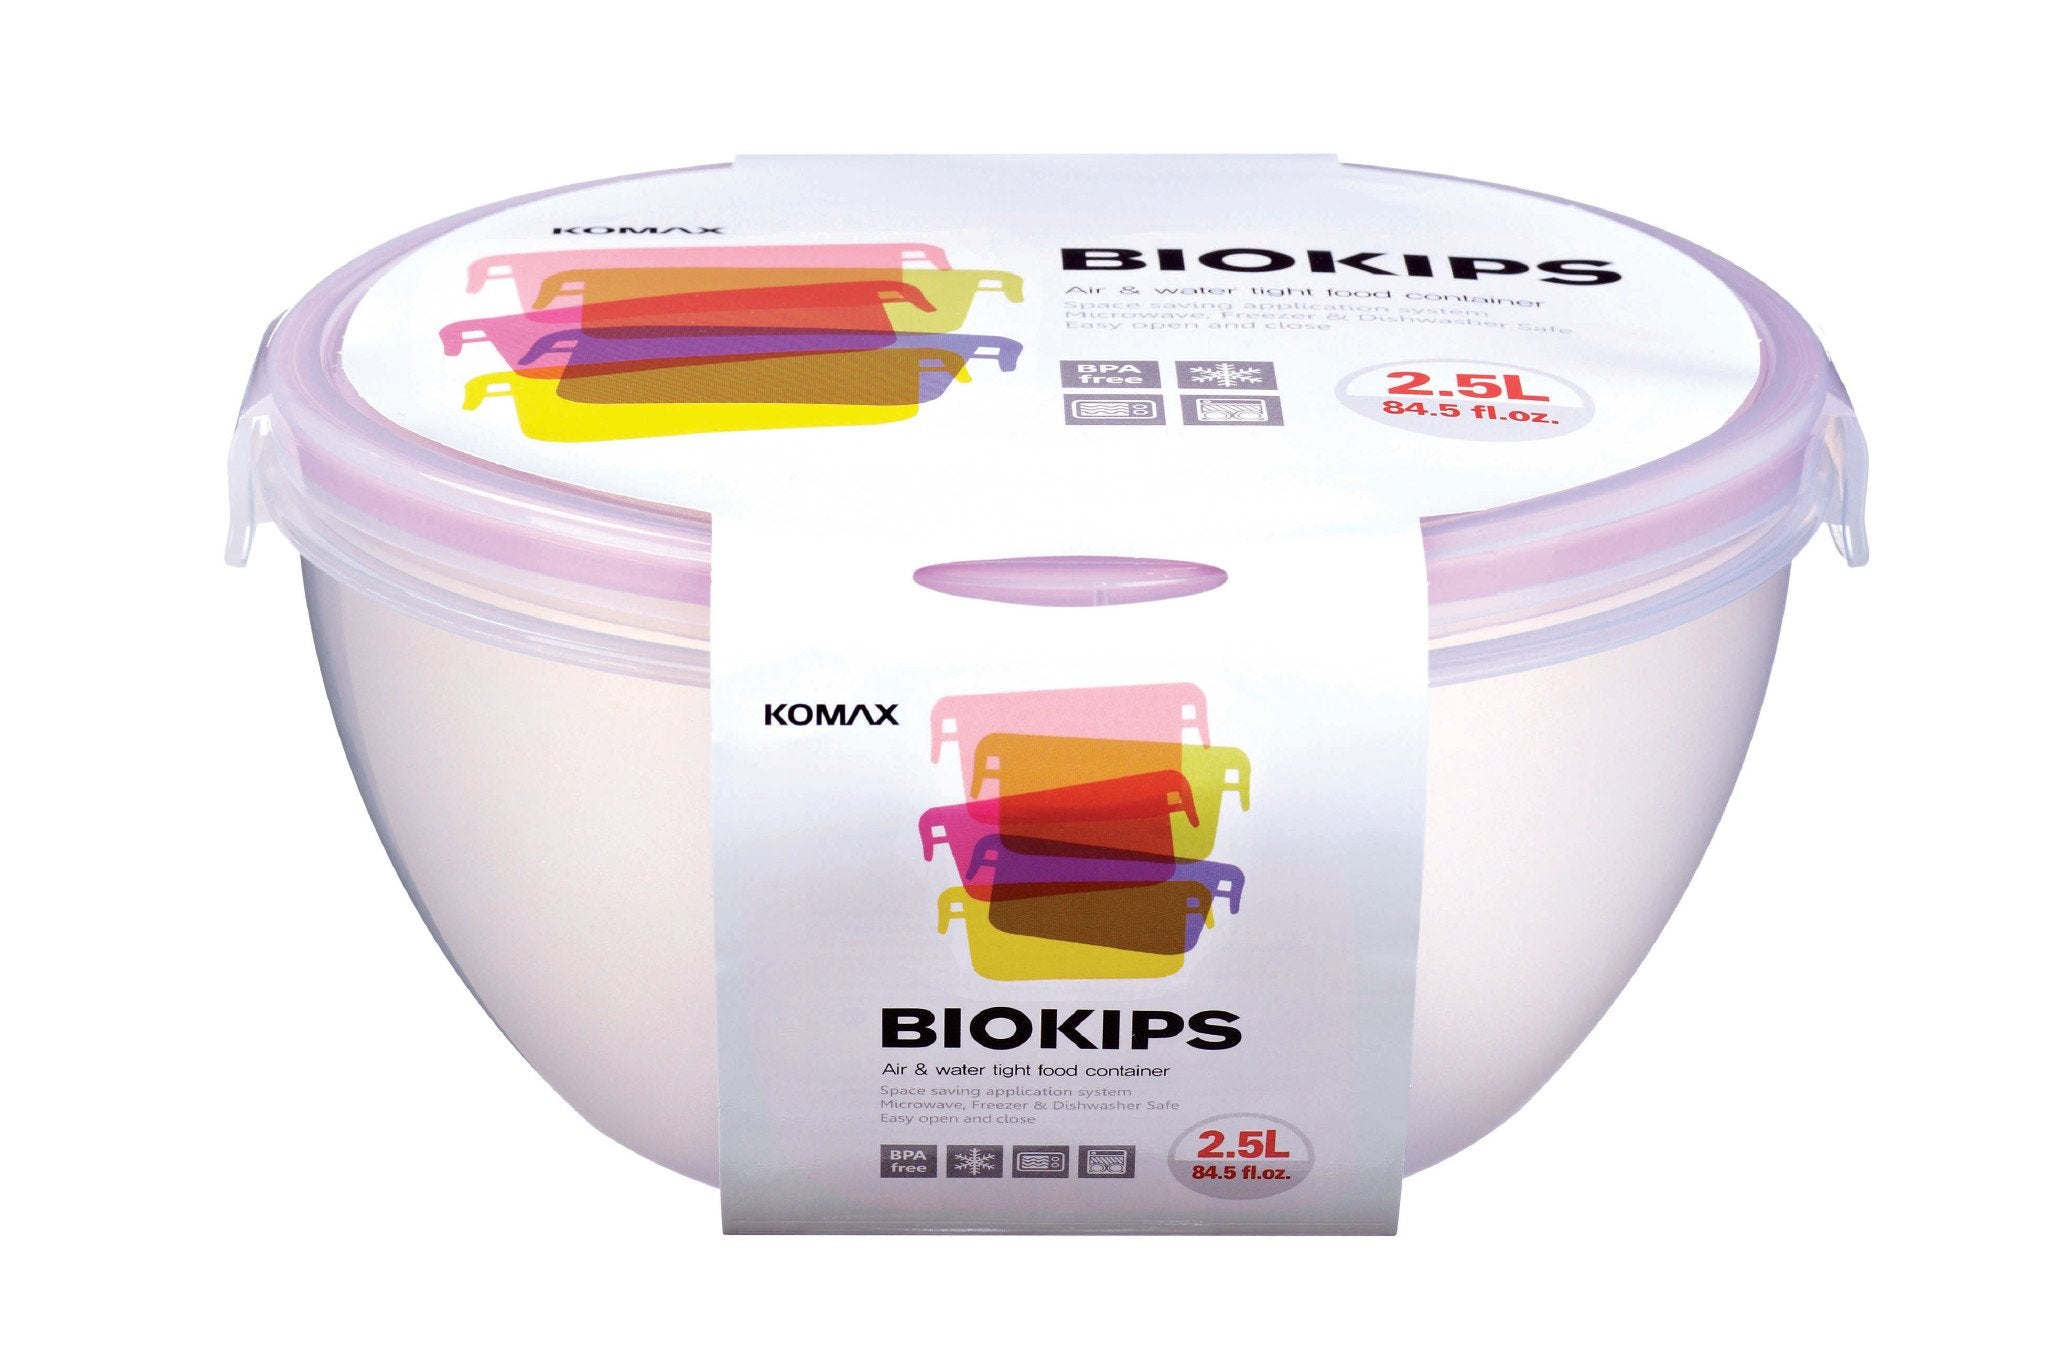 Komax Biokips Round Food Storage Container, 2.5 L